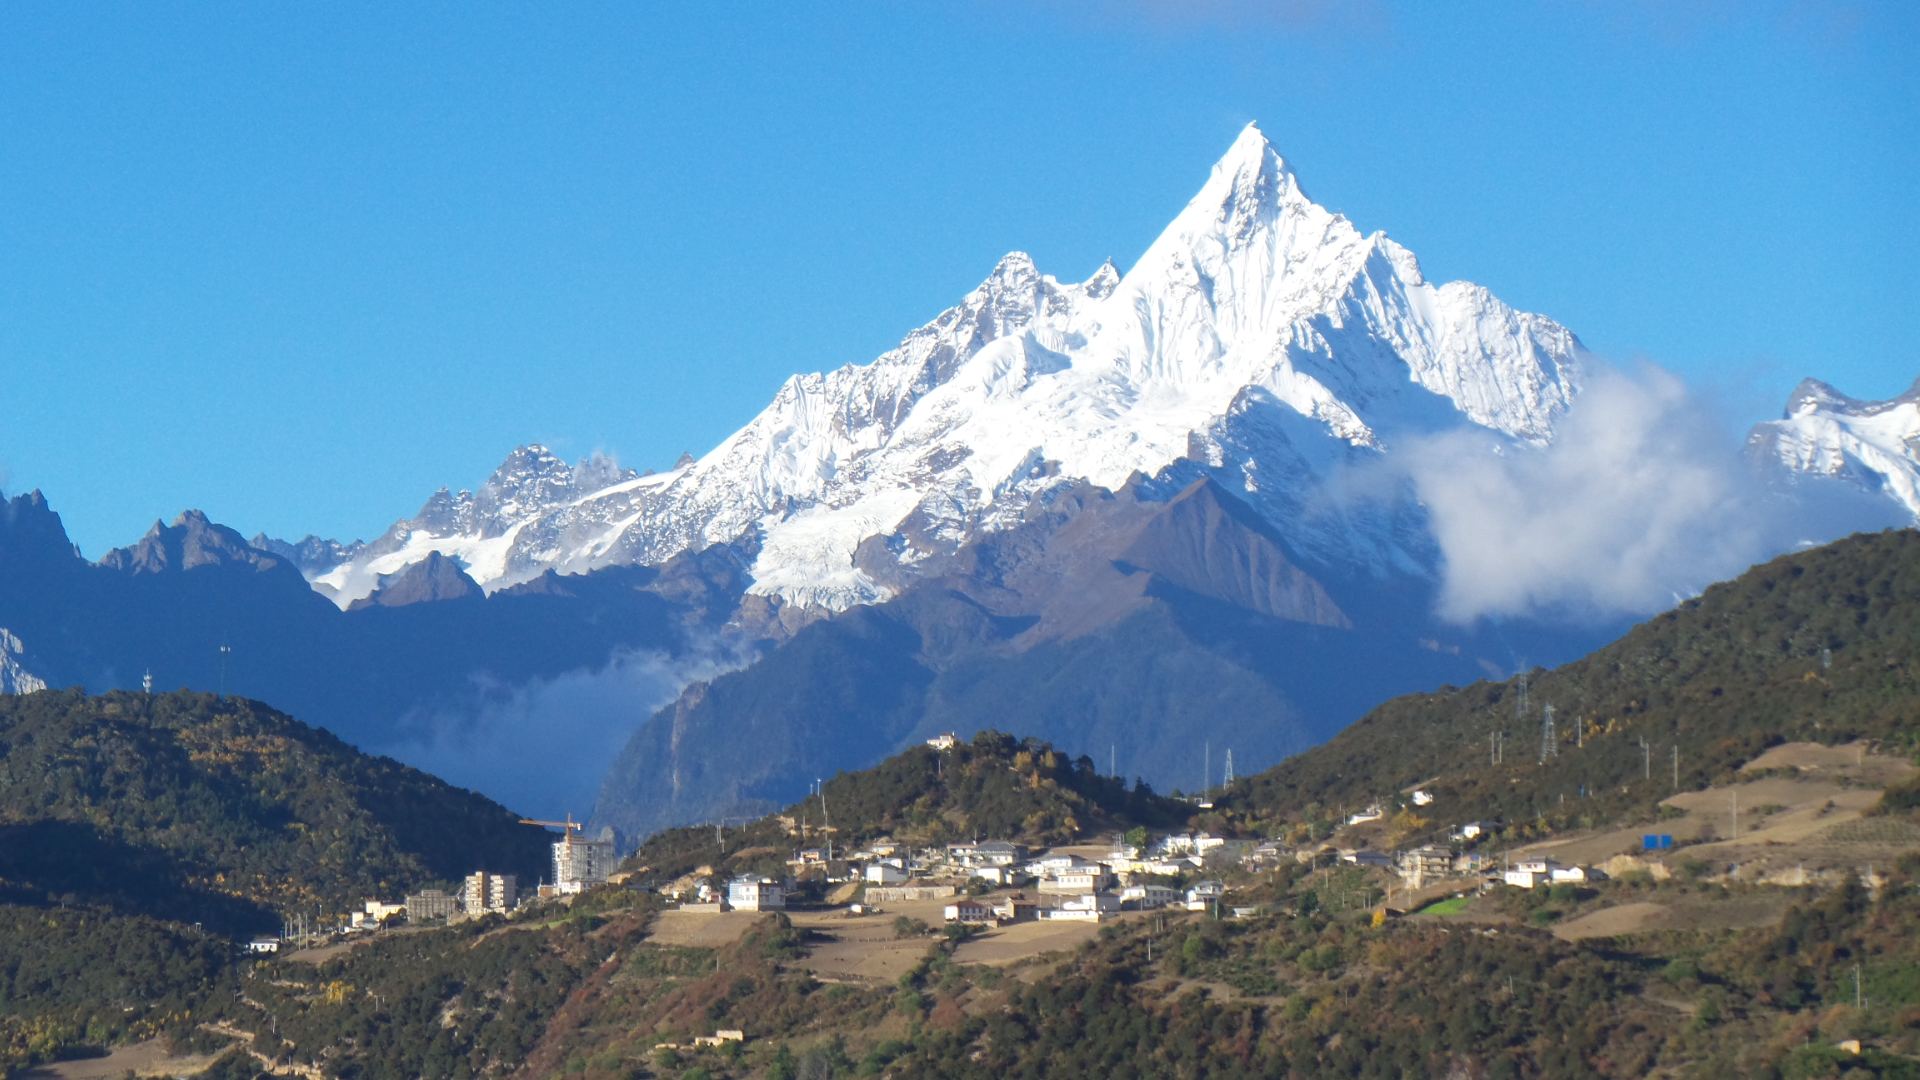 中国最美山峰:被吉尼斯世界纪录认证,美景照片成手机背景图!